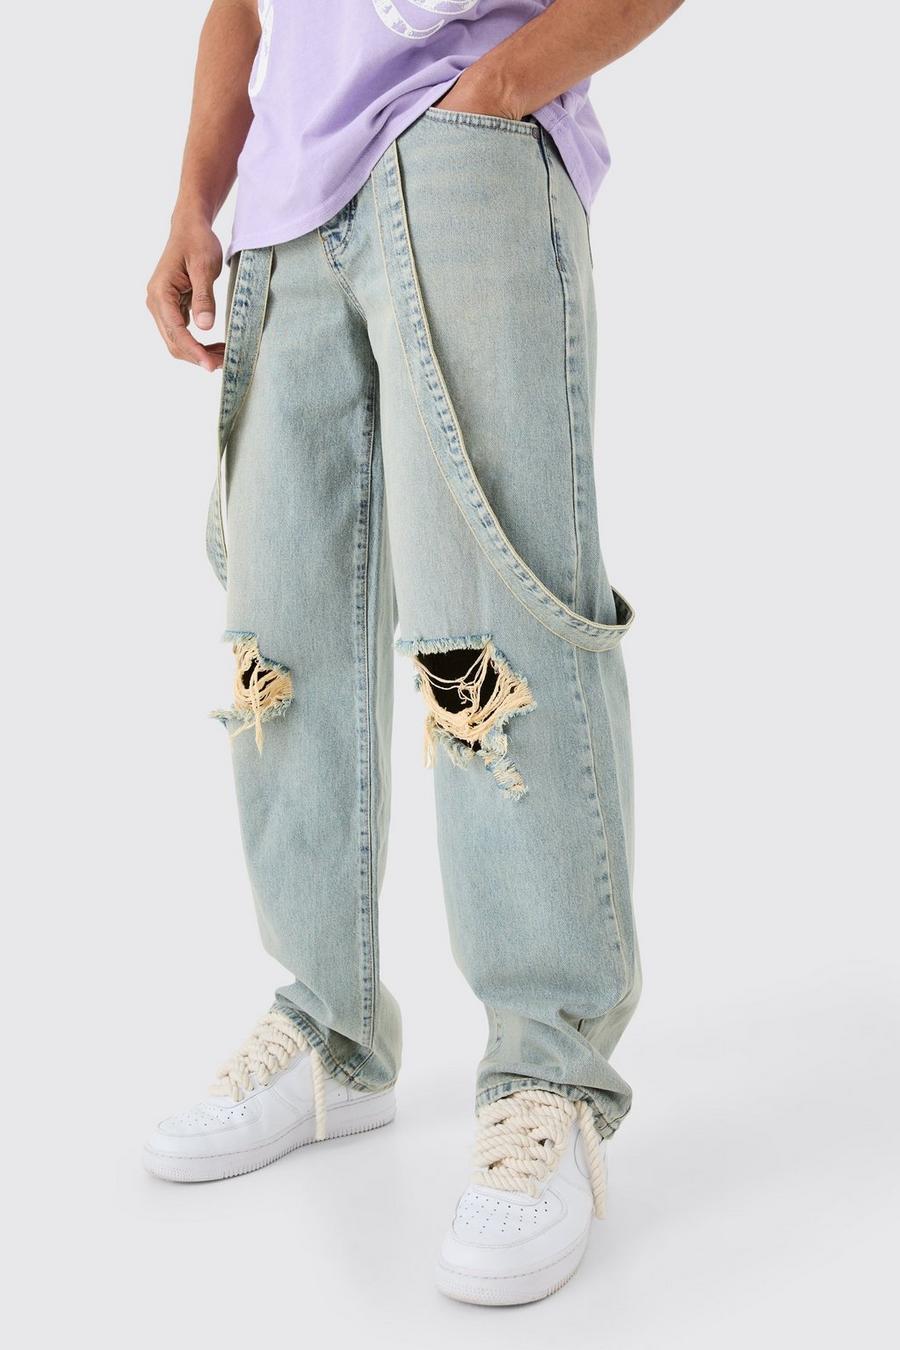 Lockere Jeans mit Riss am Knie, Antique blue